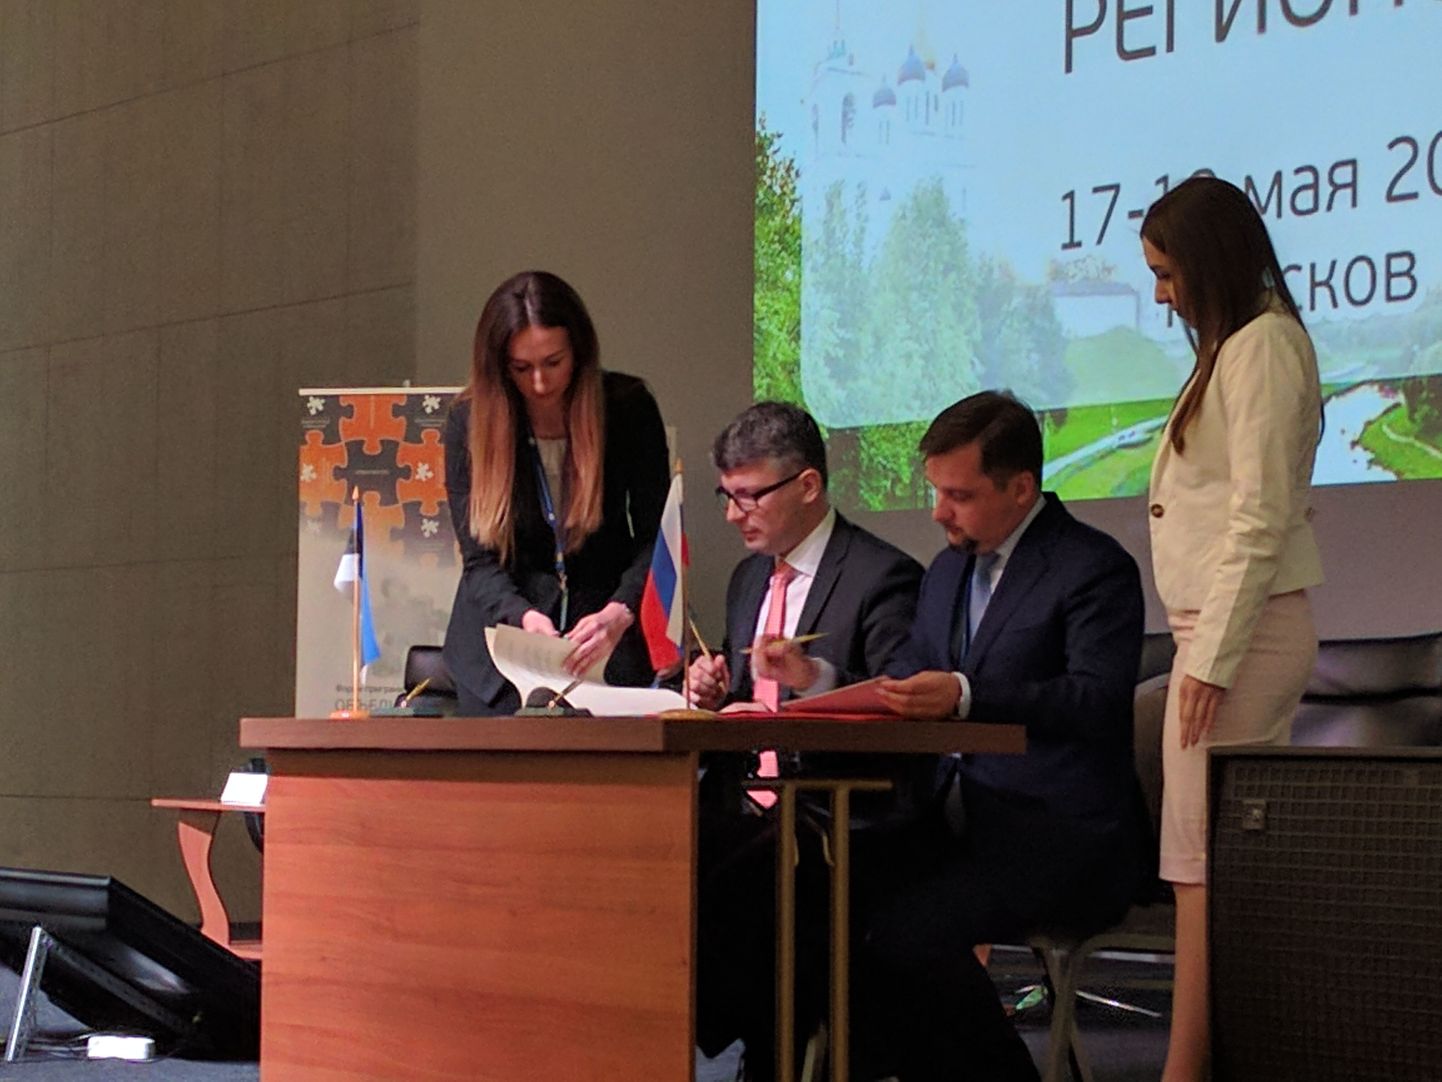 Михаил Корб подписывает соглашение о трансграничном сотрудничестве с Россией. Псков, 18 мая 2017 года.